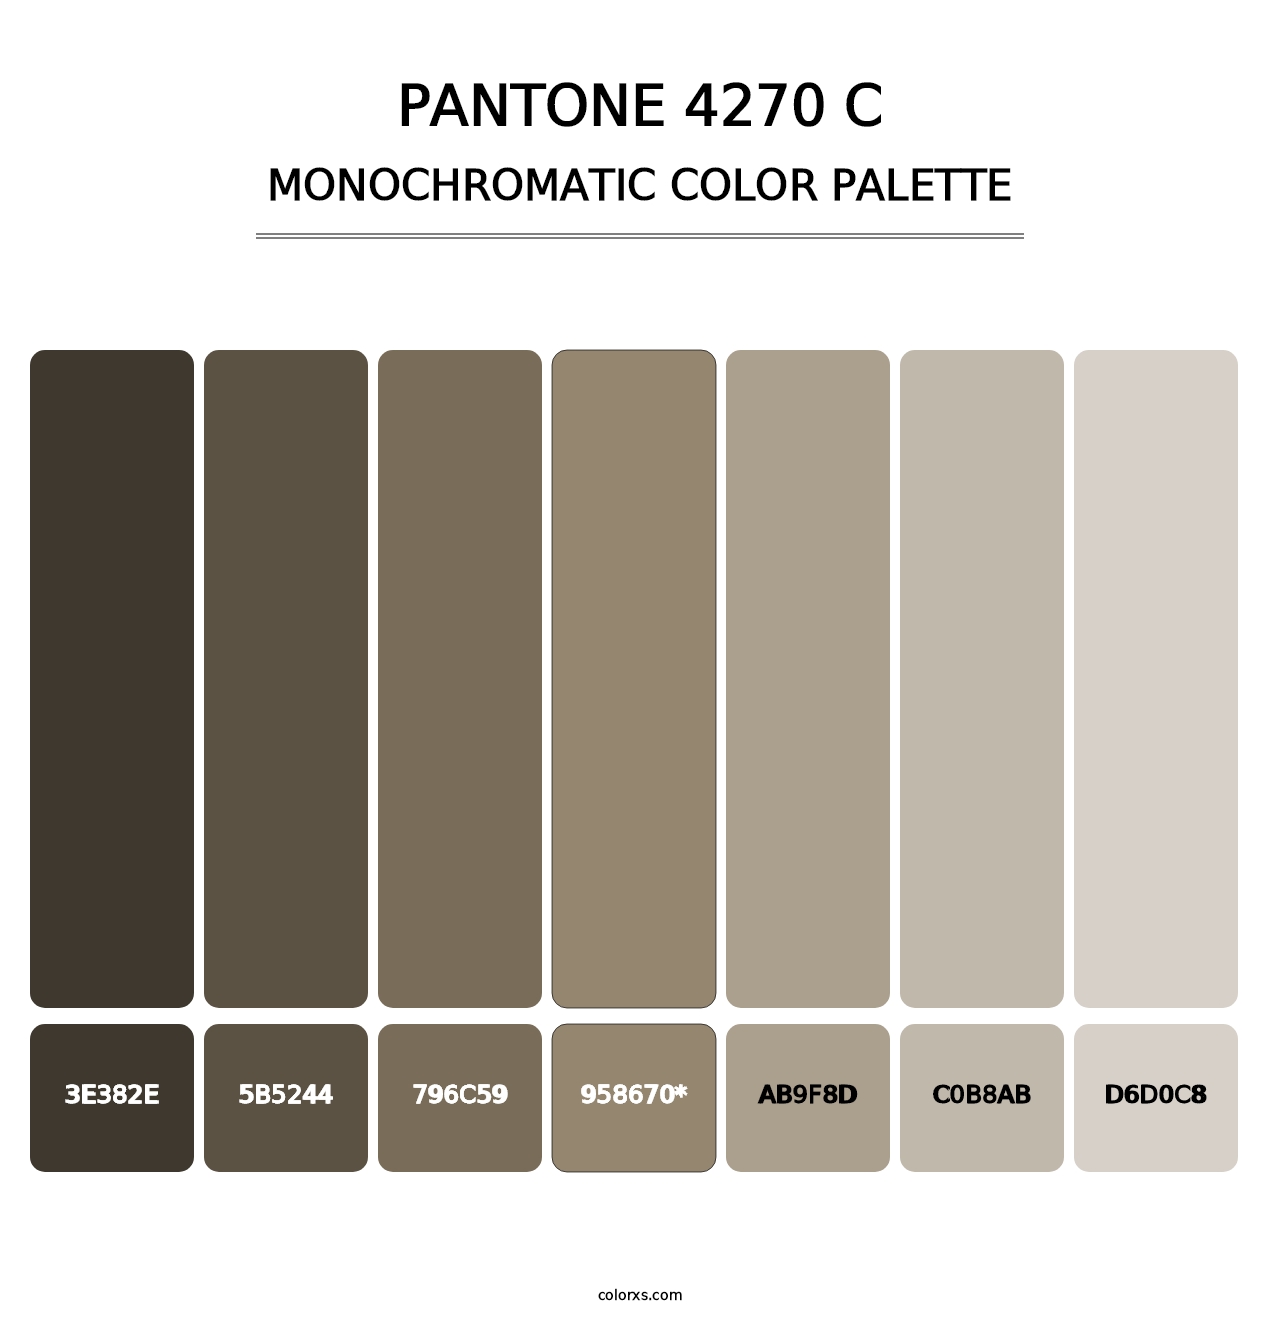 PANTONE 4270 C - Monochromatic Color Palette